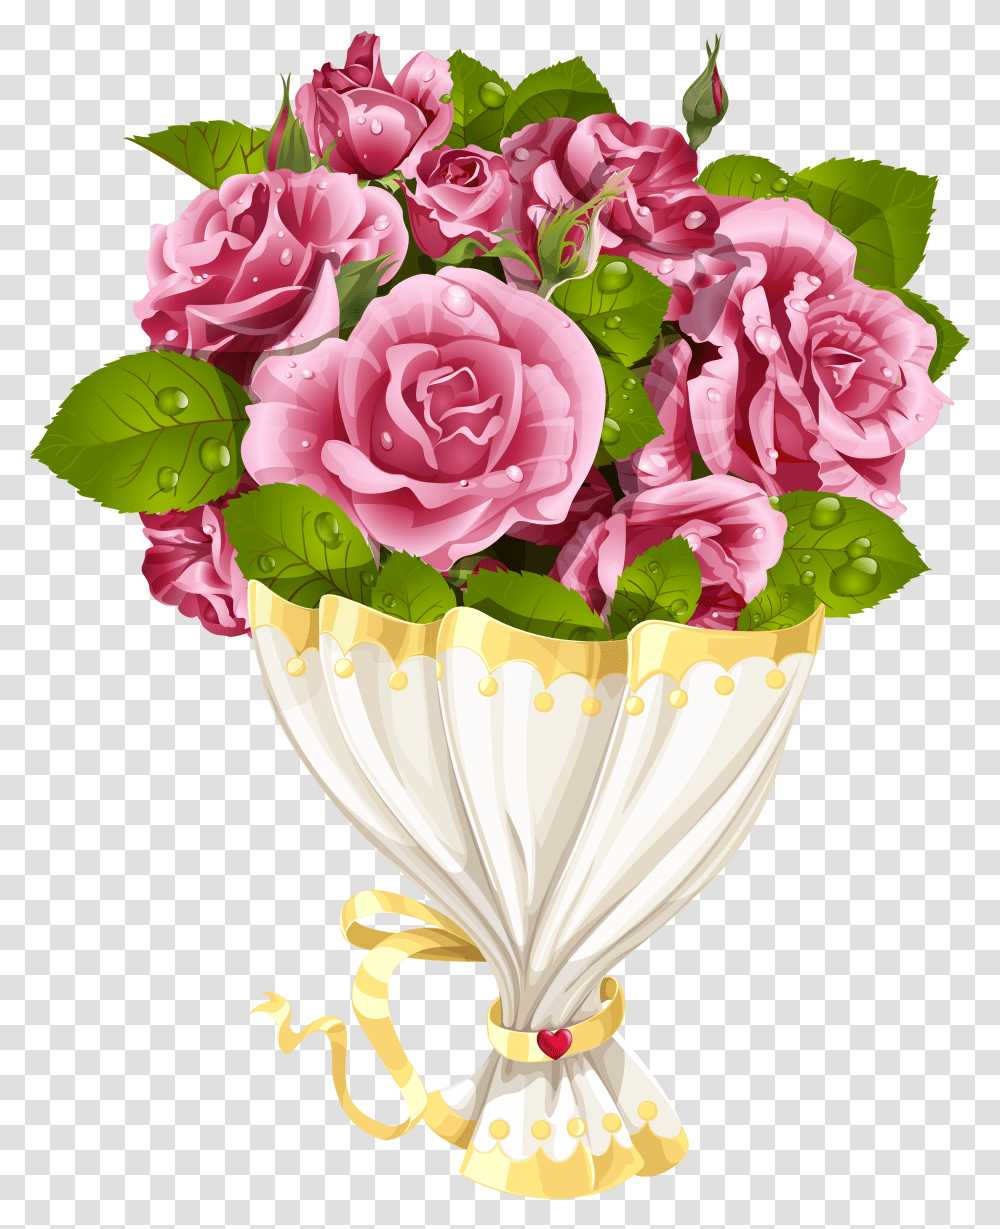 Rose Bouquet With Heart Clip Art Image Background Bouquet Clipart Transparent Png